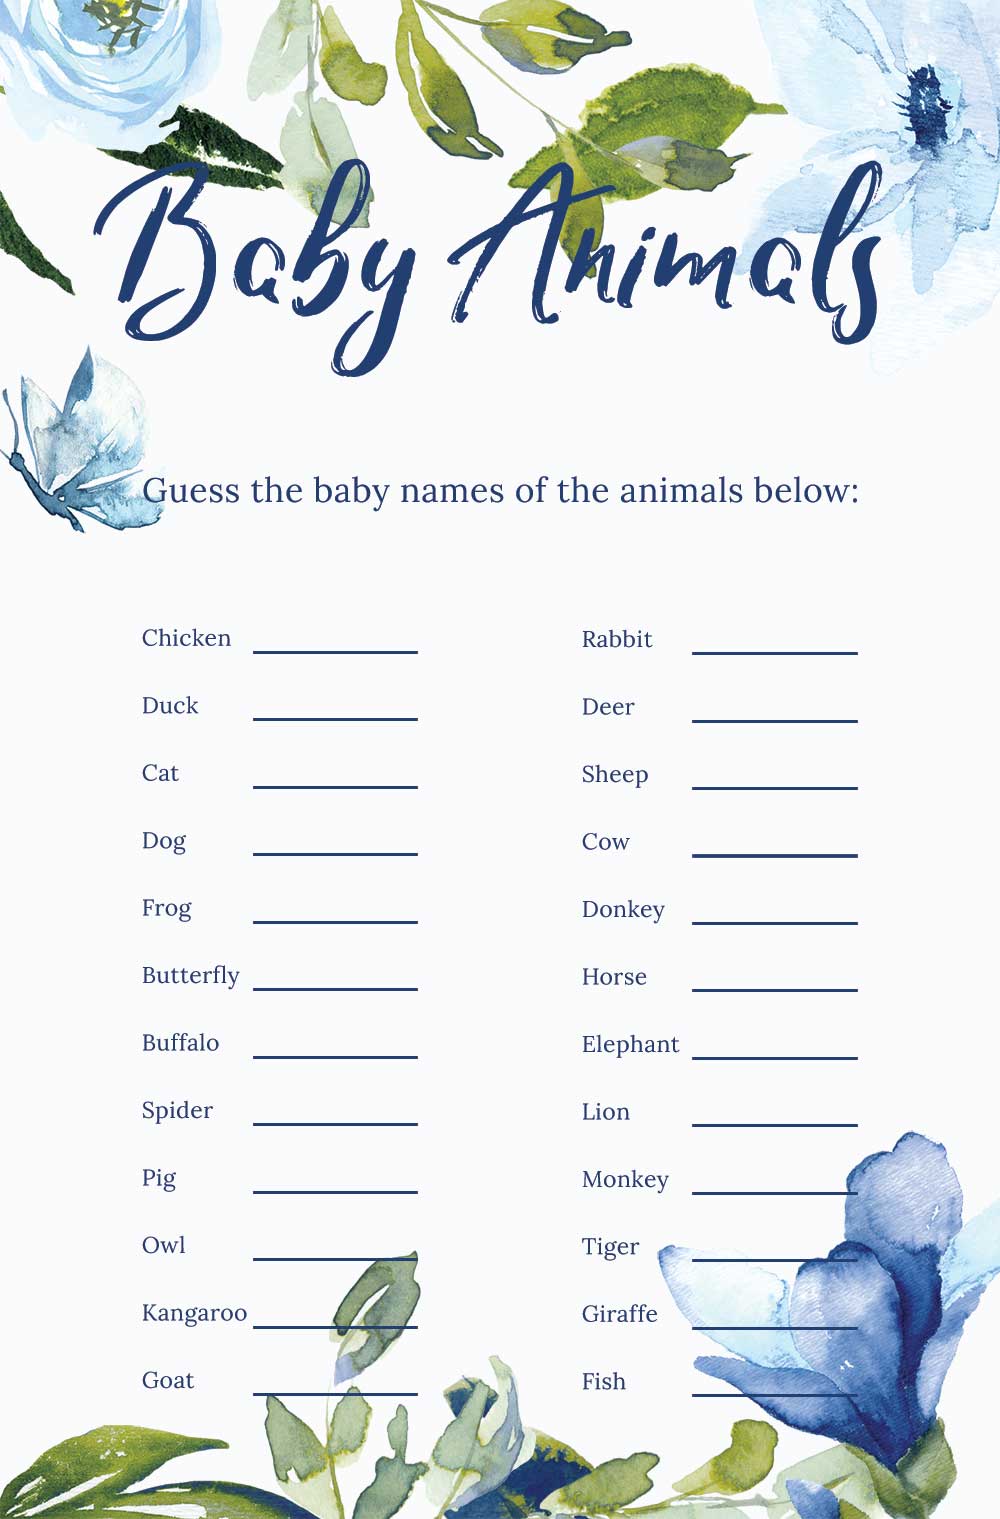 Name that baby animal game - Sky theme